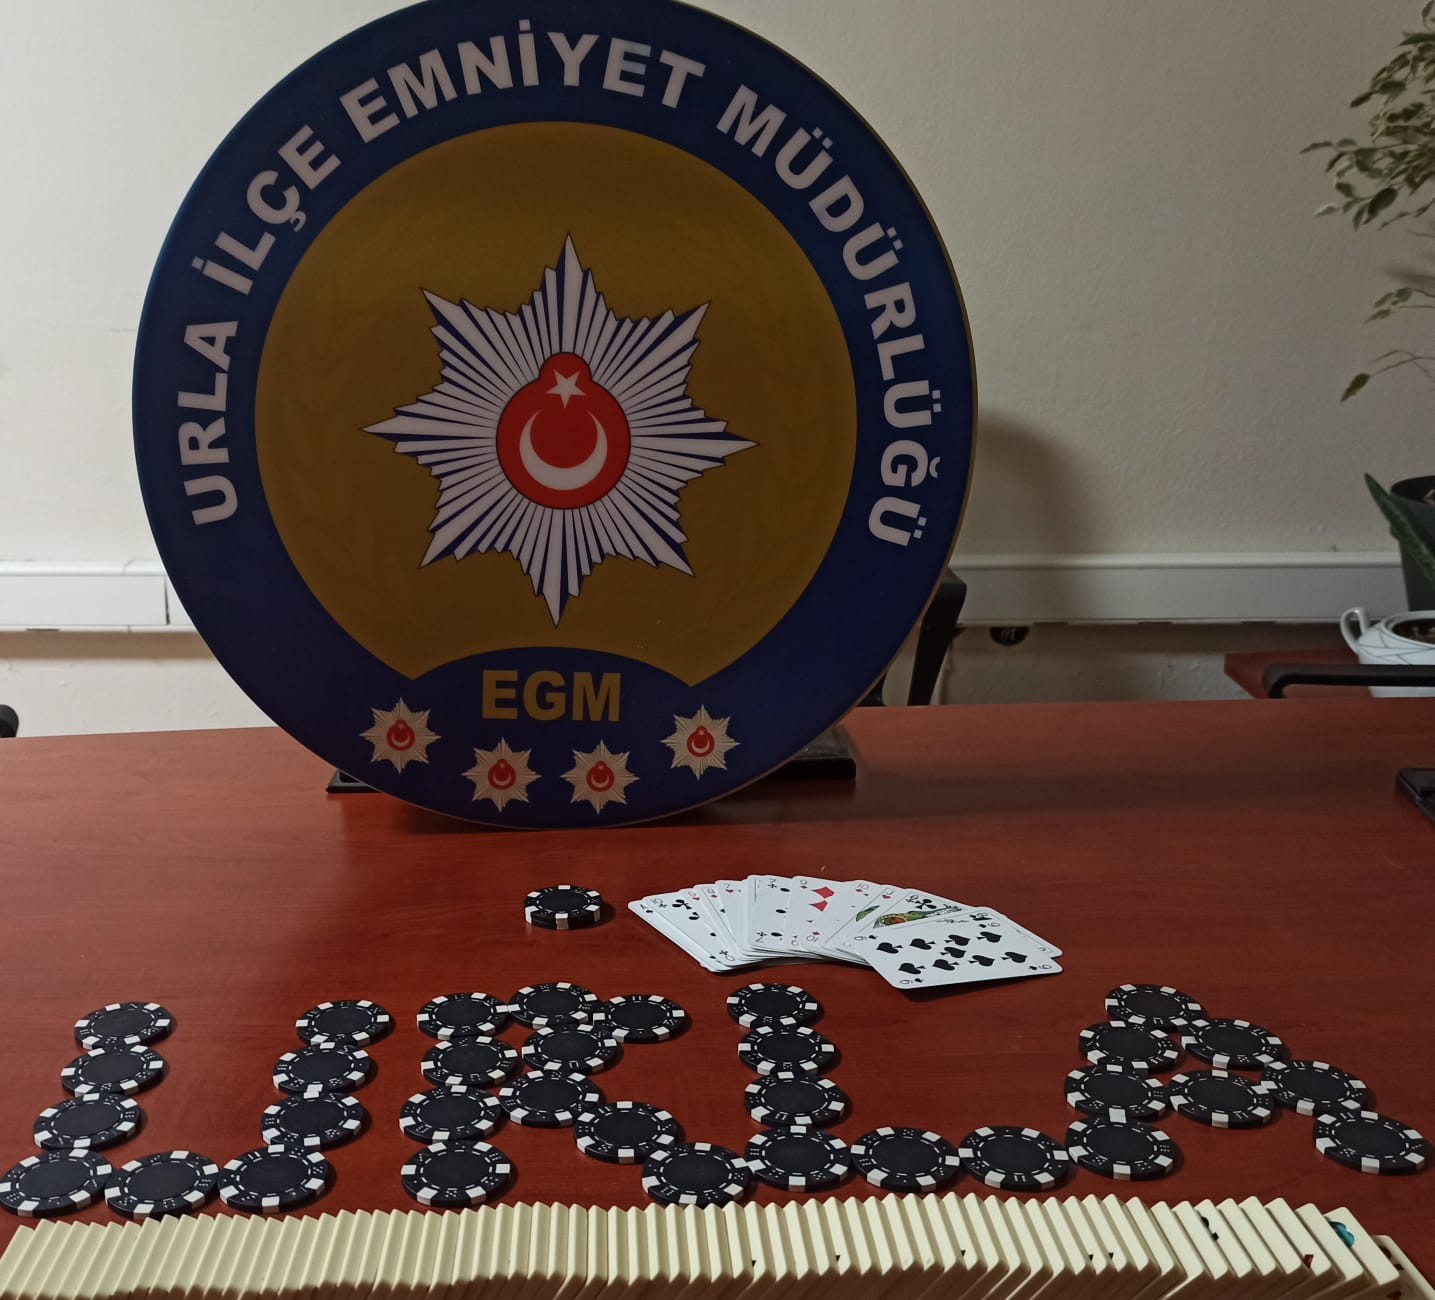 İzmir’de kahvehaneye kumar baskını: 8 kişiye binlerce lira ceza kesildi #izmir